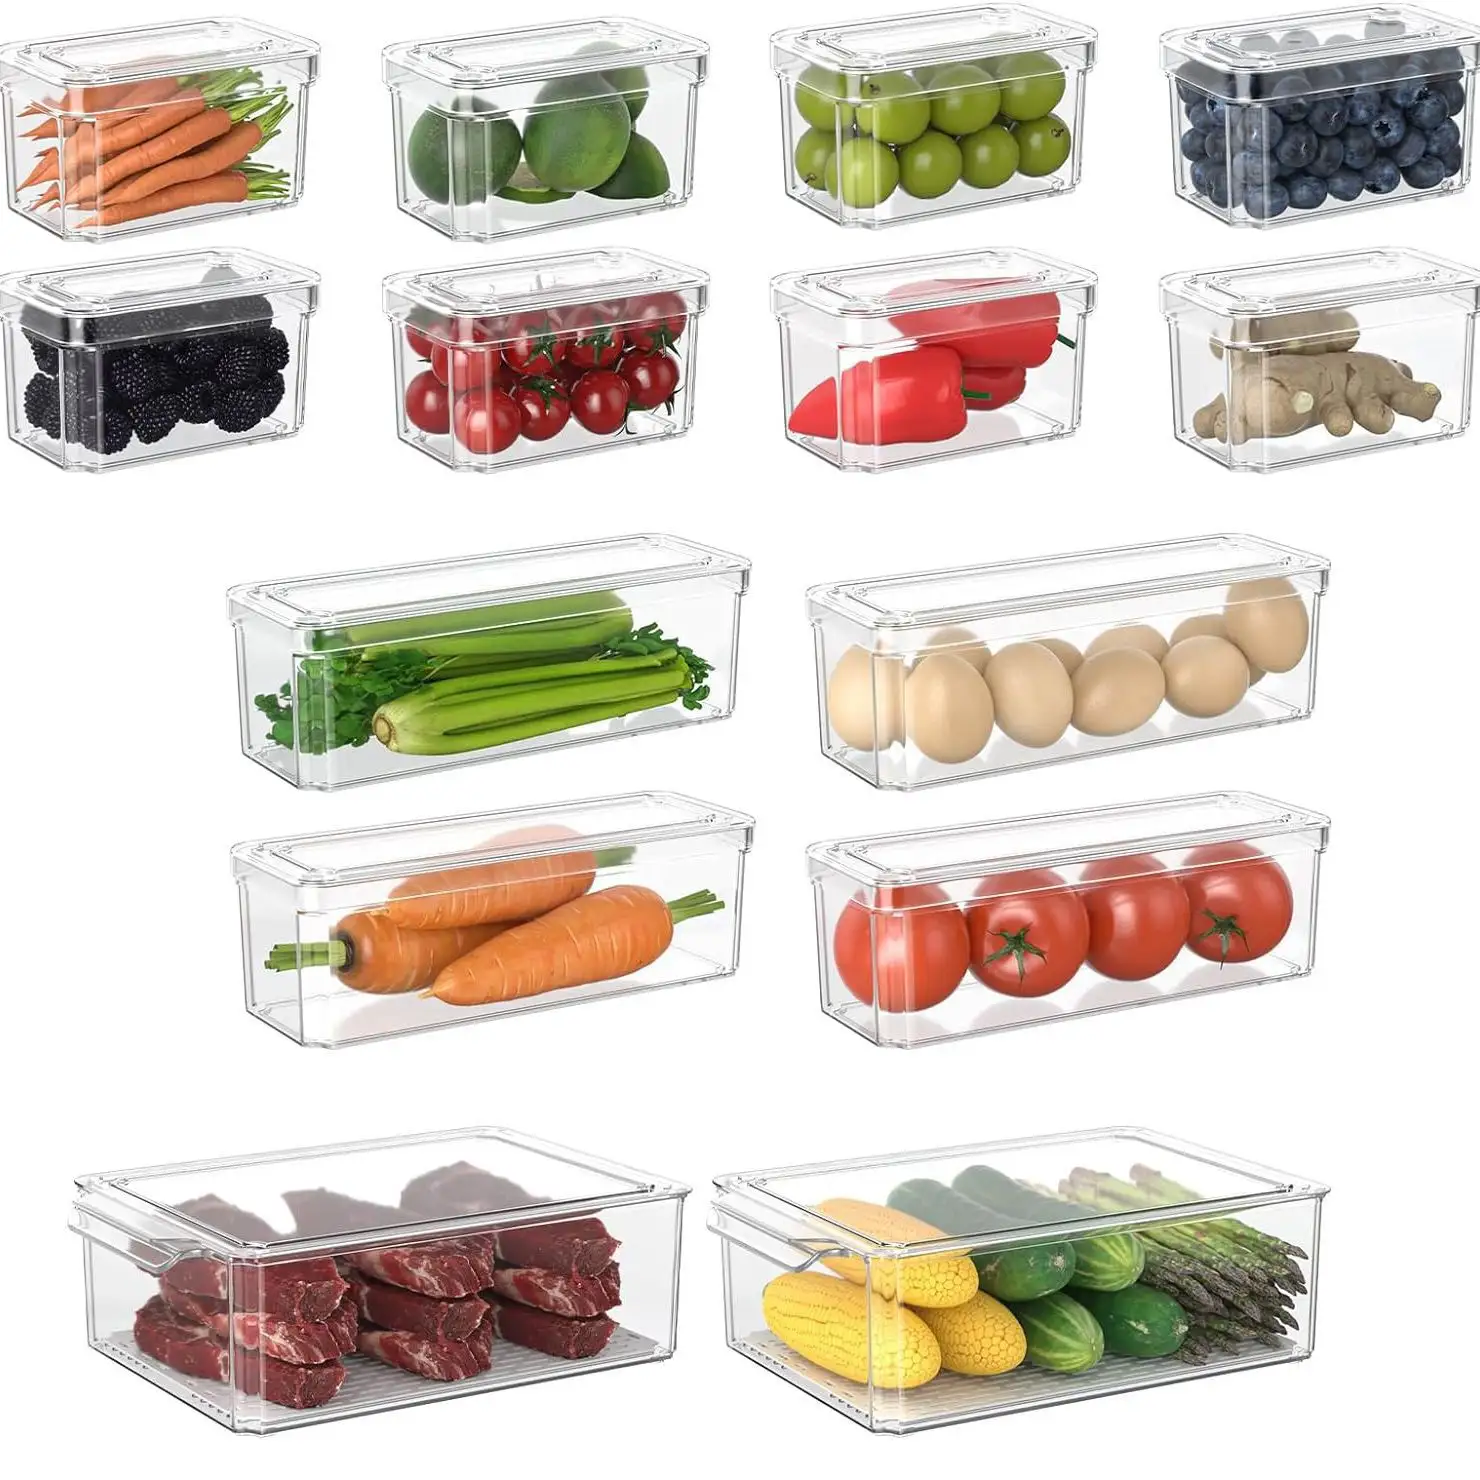 Cassonetti frigorifero congelatore dispensa raccolta scatole caso per dispensa cucina ristorante